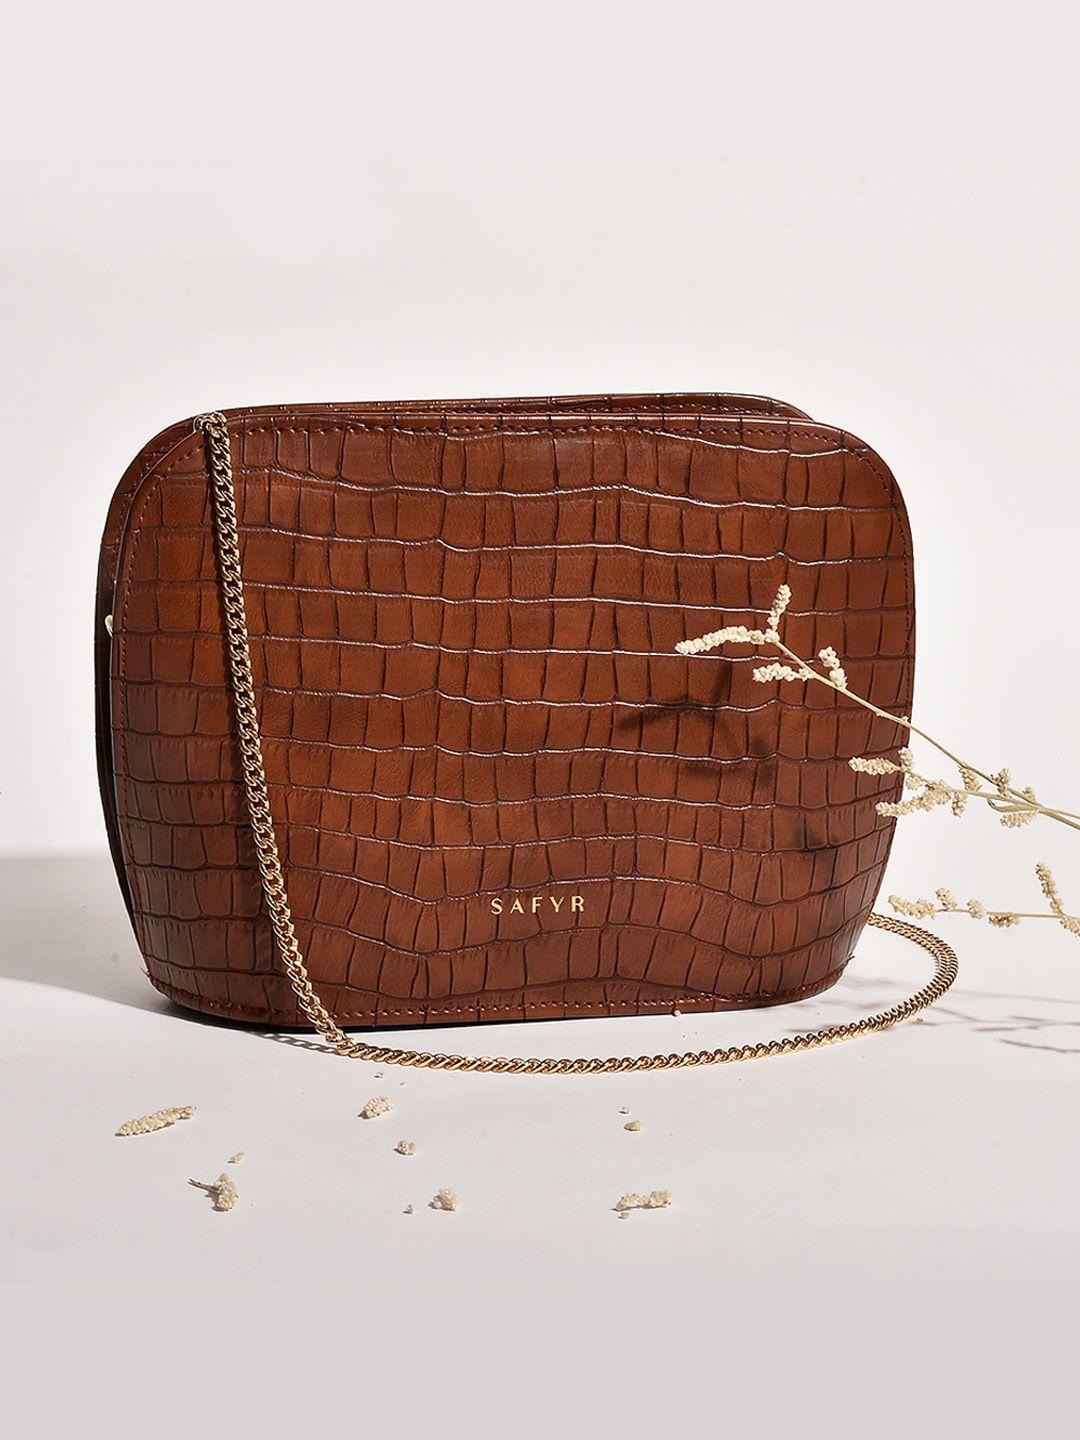 safyr brown textured structured sling bag